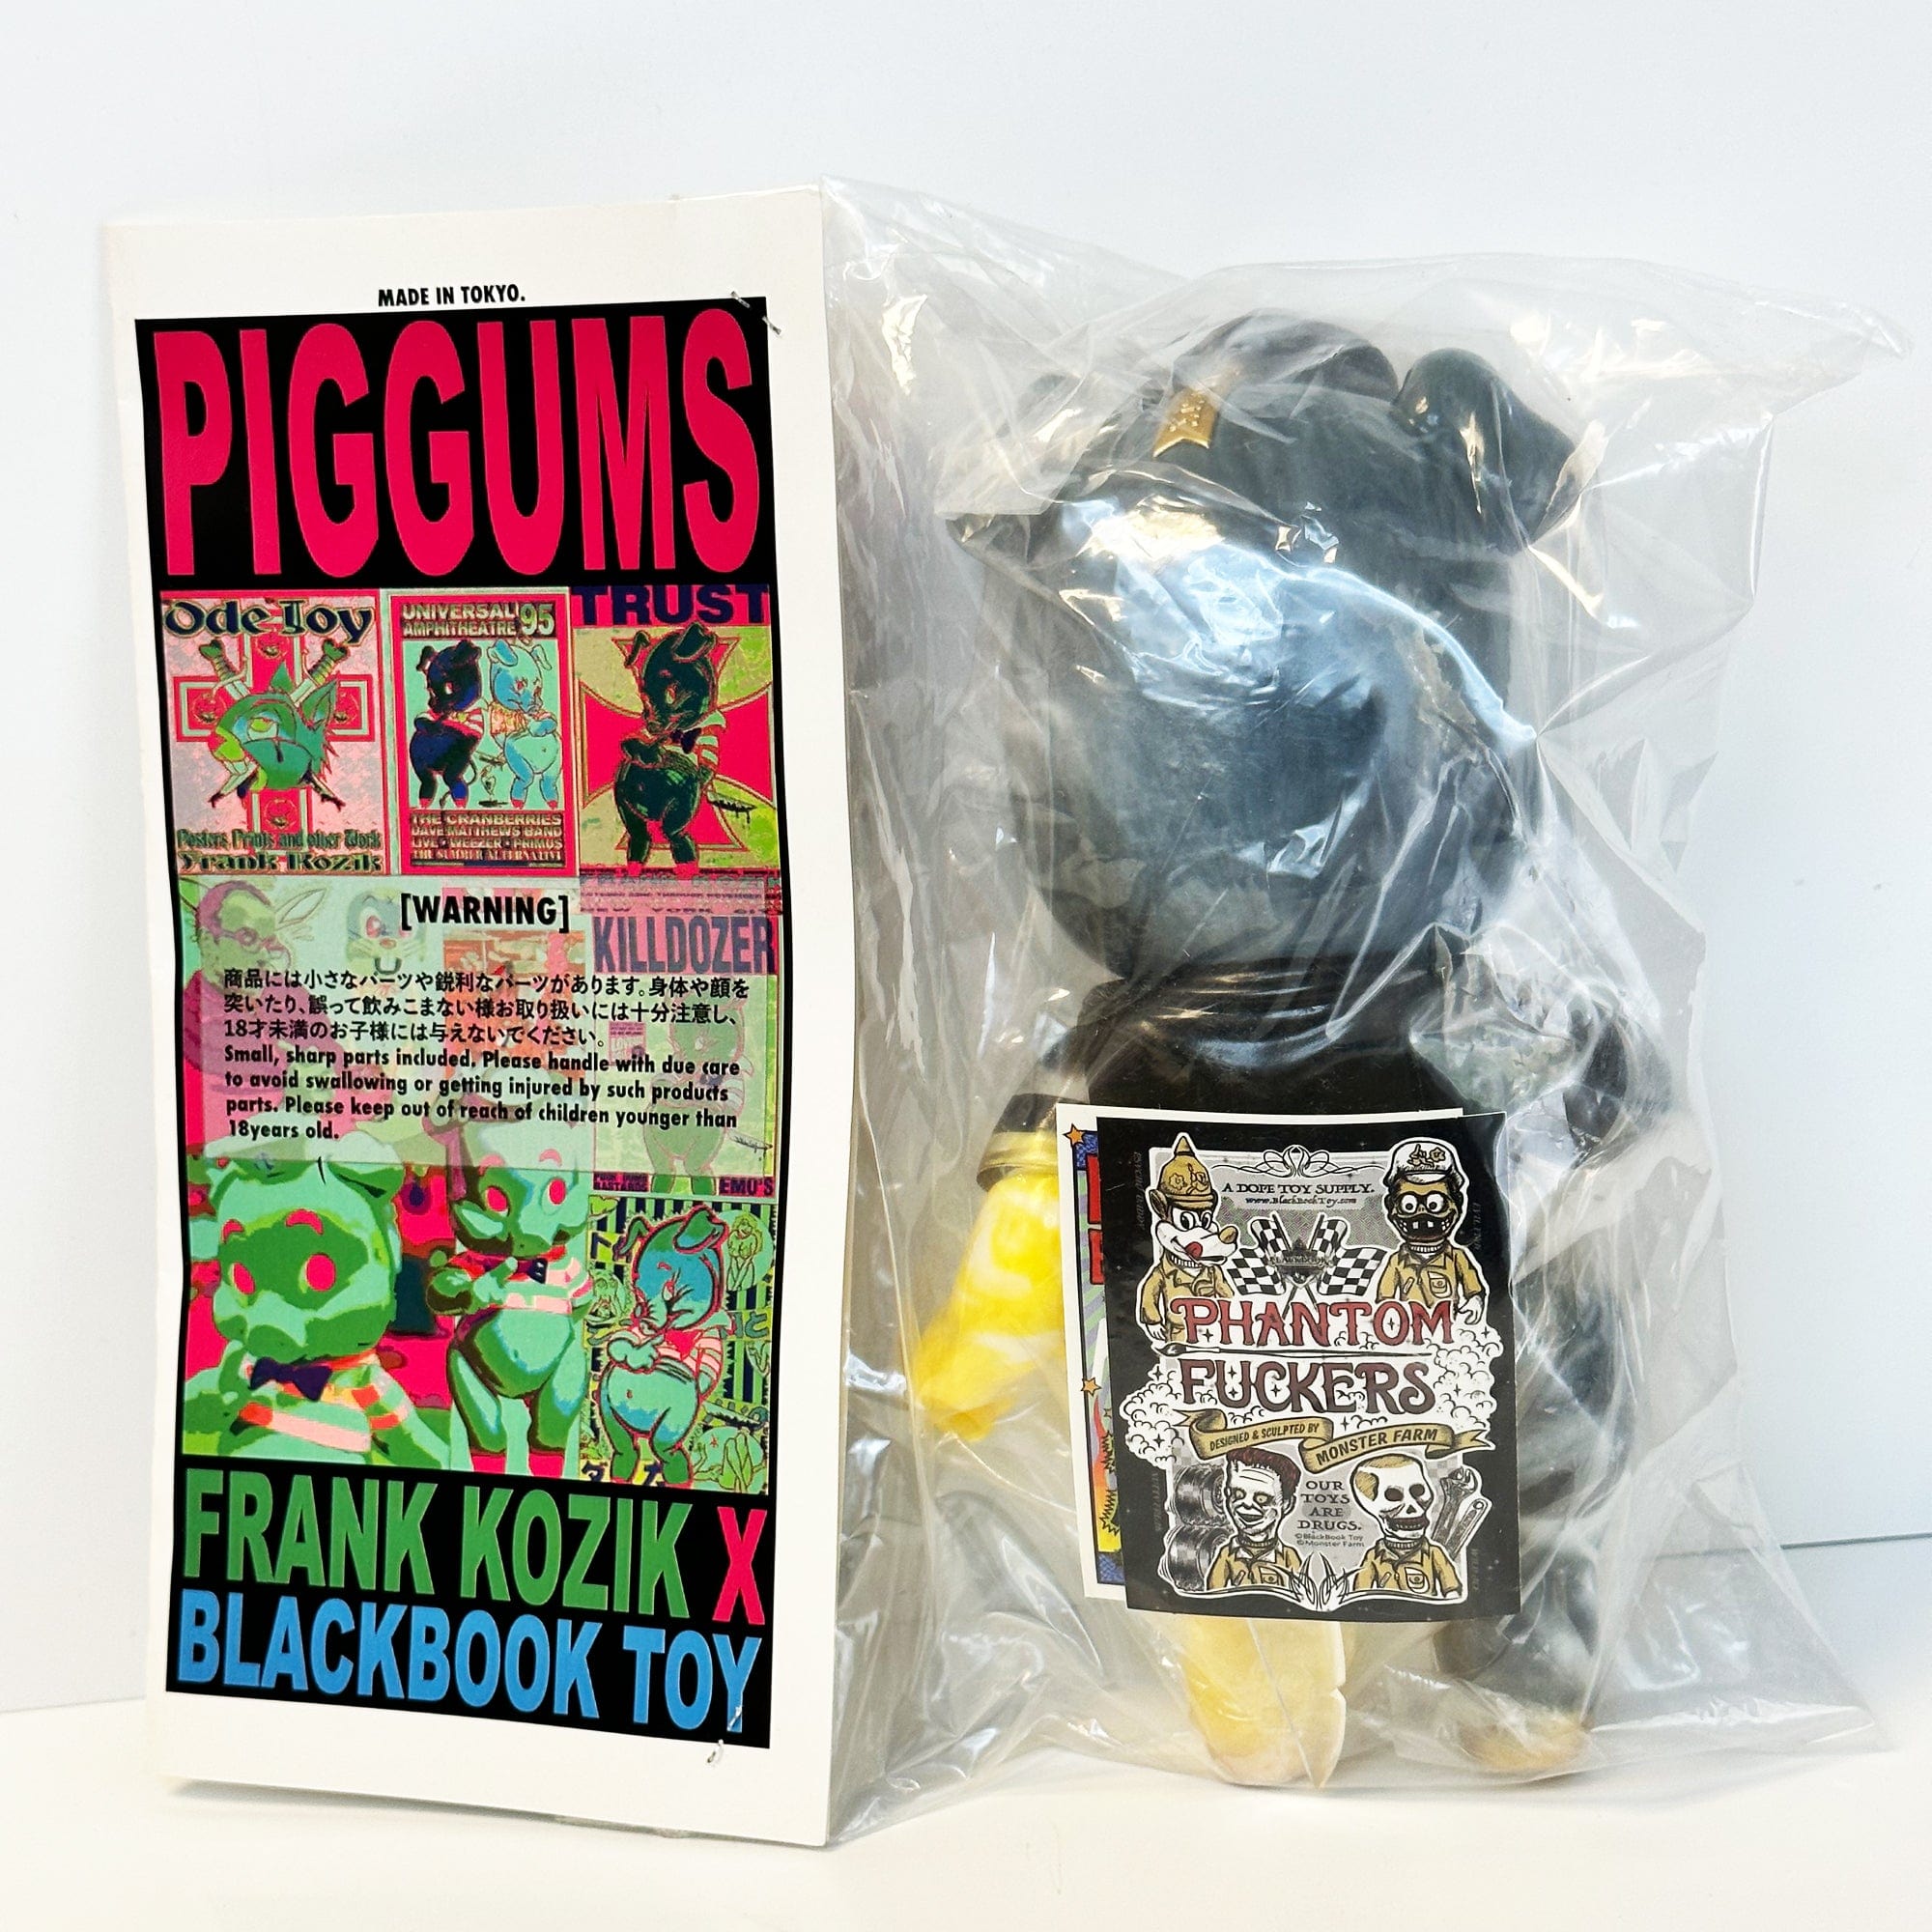 Marbled Piggums Version 2 Japan Made Sofubi by Frank Kozik x Black Boo